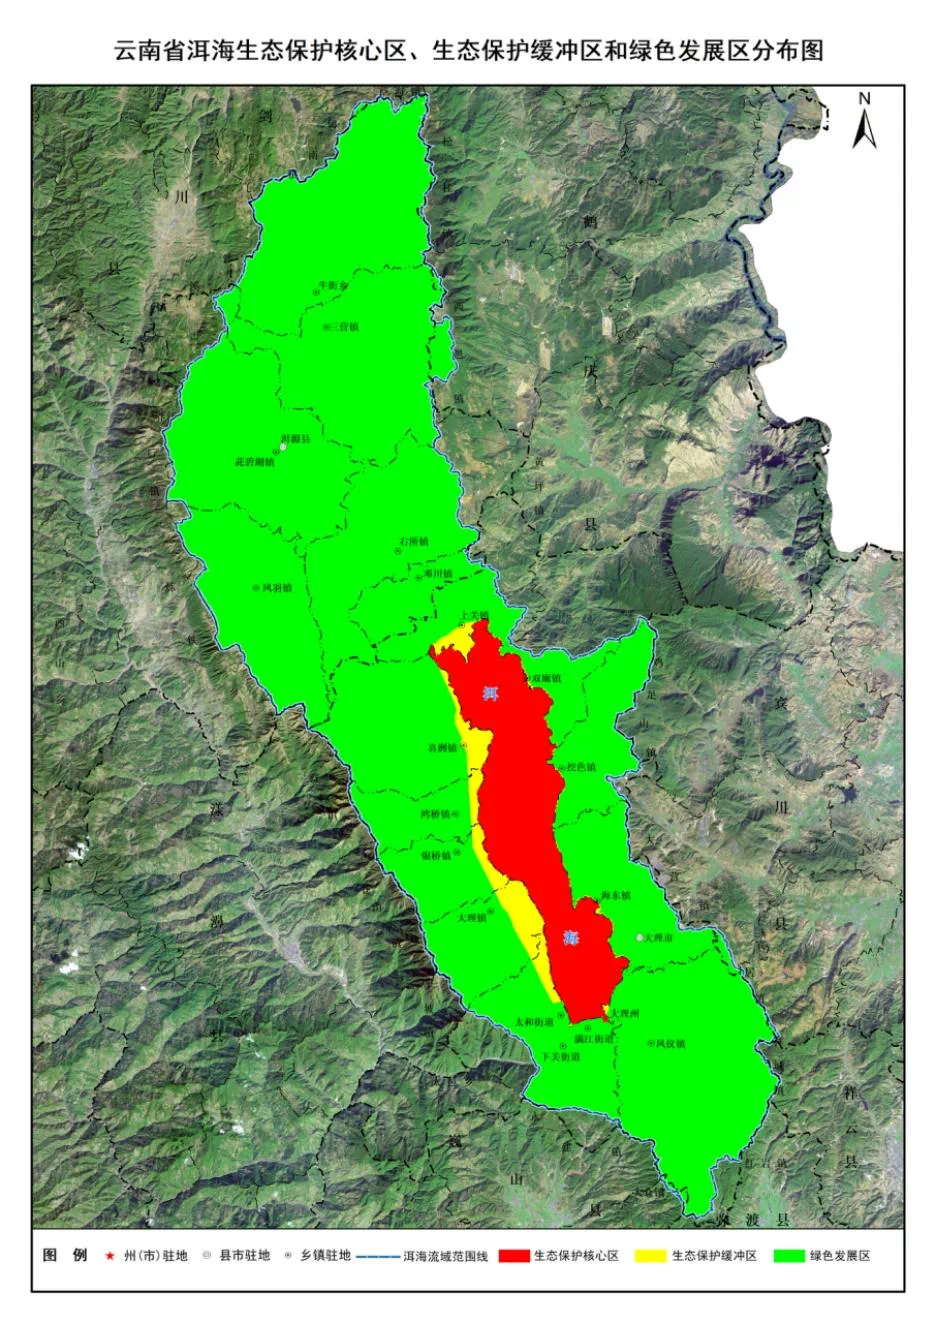 大理洱海湖滨生态红线和湖泊生态黄线划定!正在征求意见